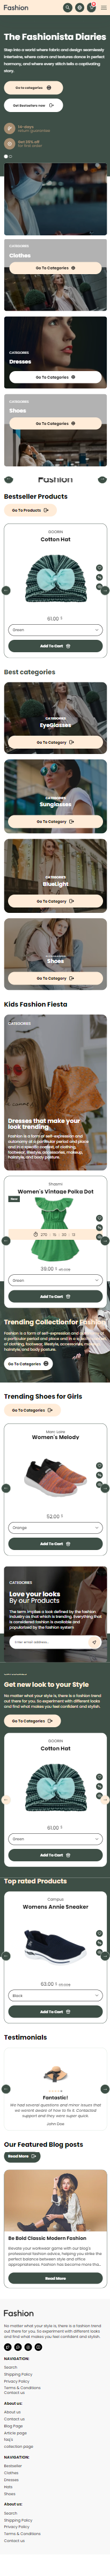 Fashion Shopify Theme - WorkDo